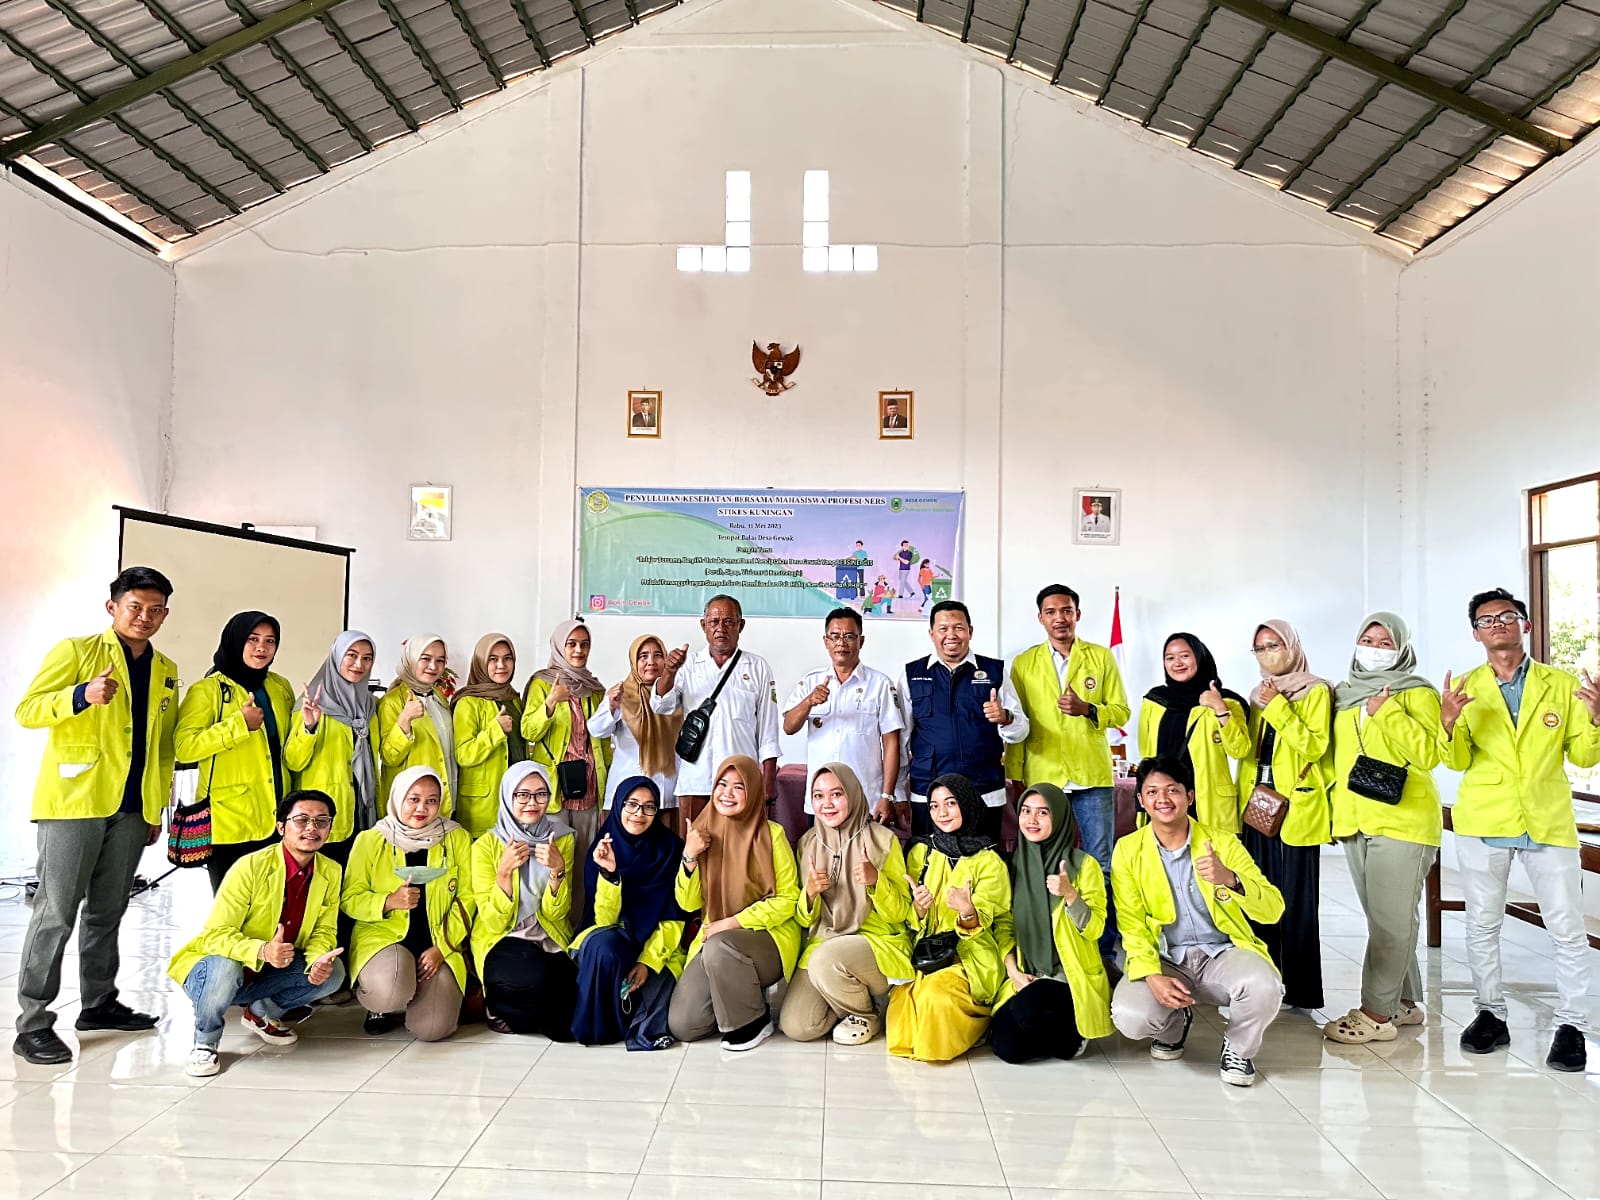 Kegiatan Penyuluhan Kesehatan bersama Mahasiswa Profesi Ners di Desa Gewok. Ajak Masyarakat untuk BERSINERGI (Bersih, Sigap, Visioner & Berstrategis)